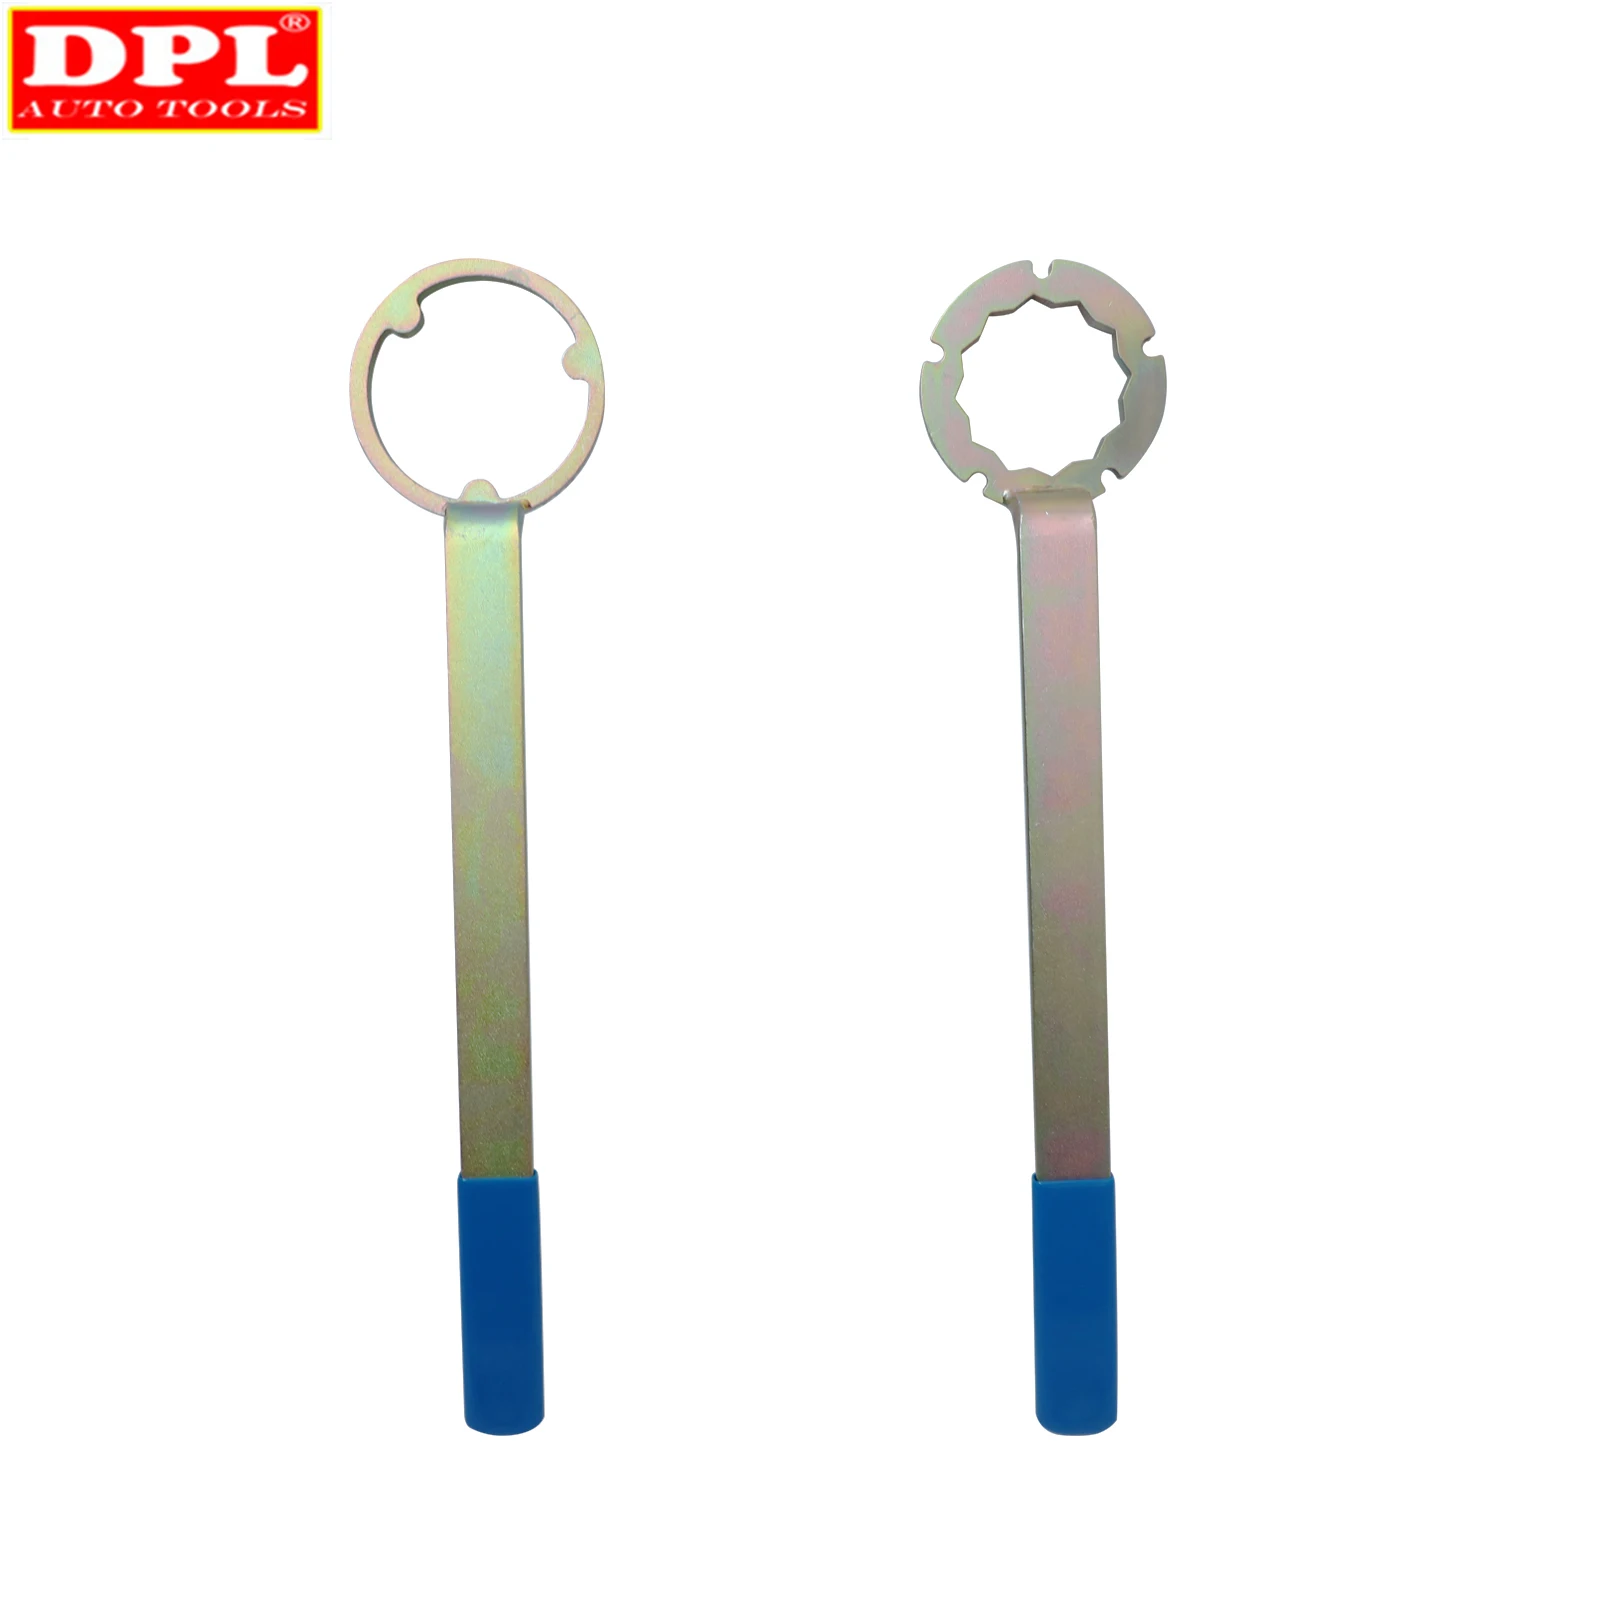 DPL Motor Zahnriemen Entfernung Installation Werkzeug Set Für Subaru Forester Nockenwelle Pulley Wrench Halter Auto Reparatur Werkzeug